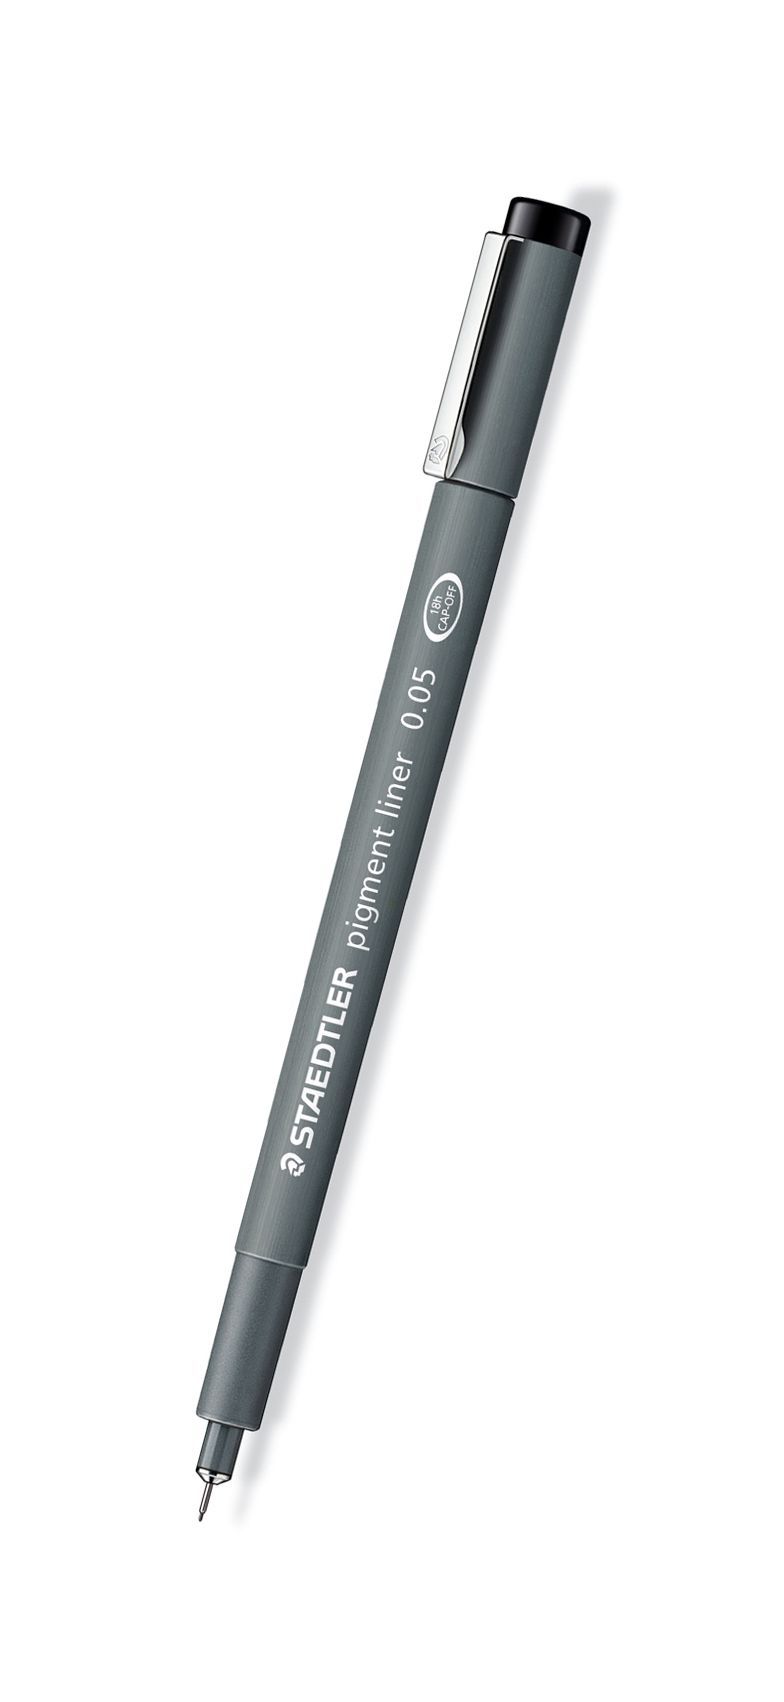 Dessin et coloriage enfant Pentel s360-12 stylo feutre